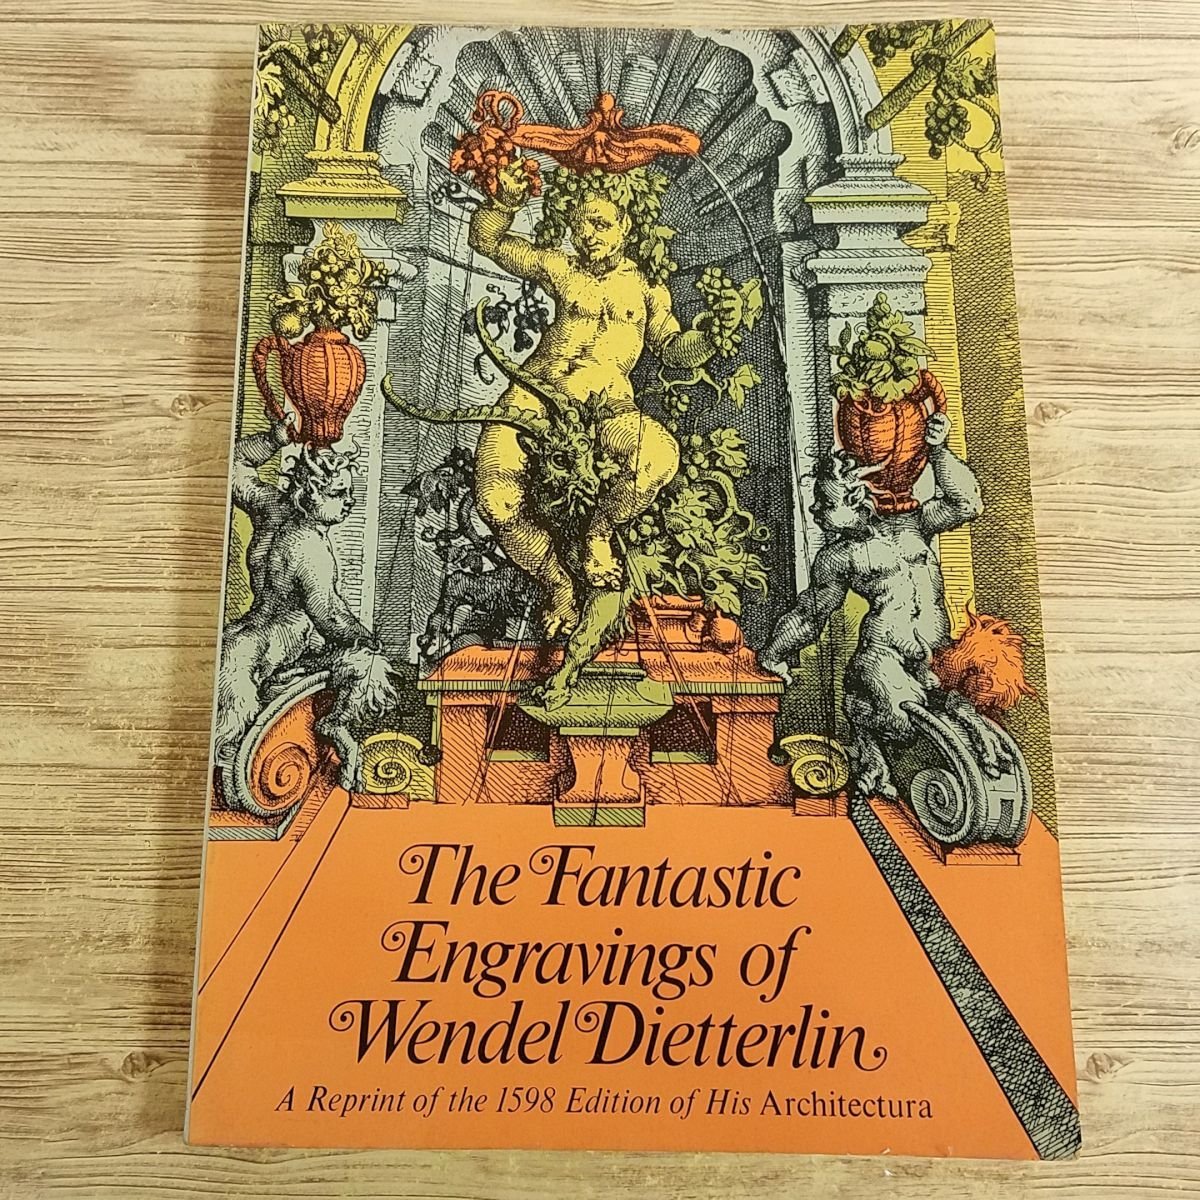 イラスト集[The Fantastic Engravings of Wendel Dietterlin : A Reprint of the 1598 Edition of His Architectura]装飾建築画集 創作資料_画像1